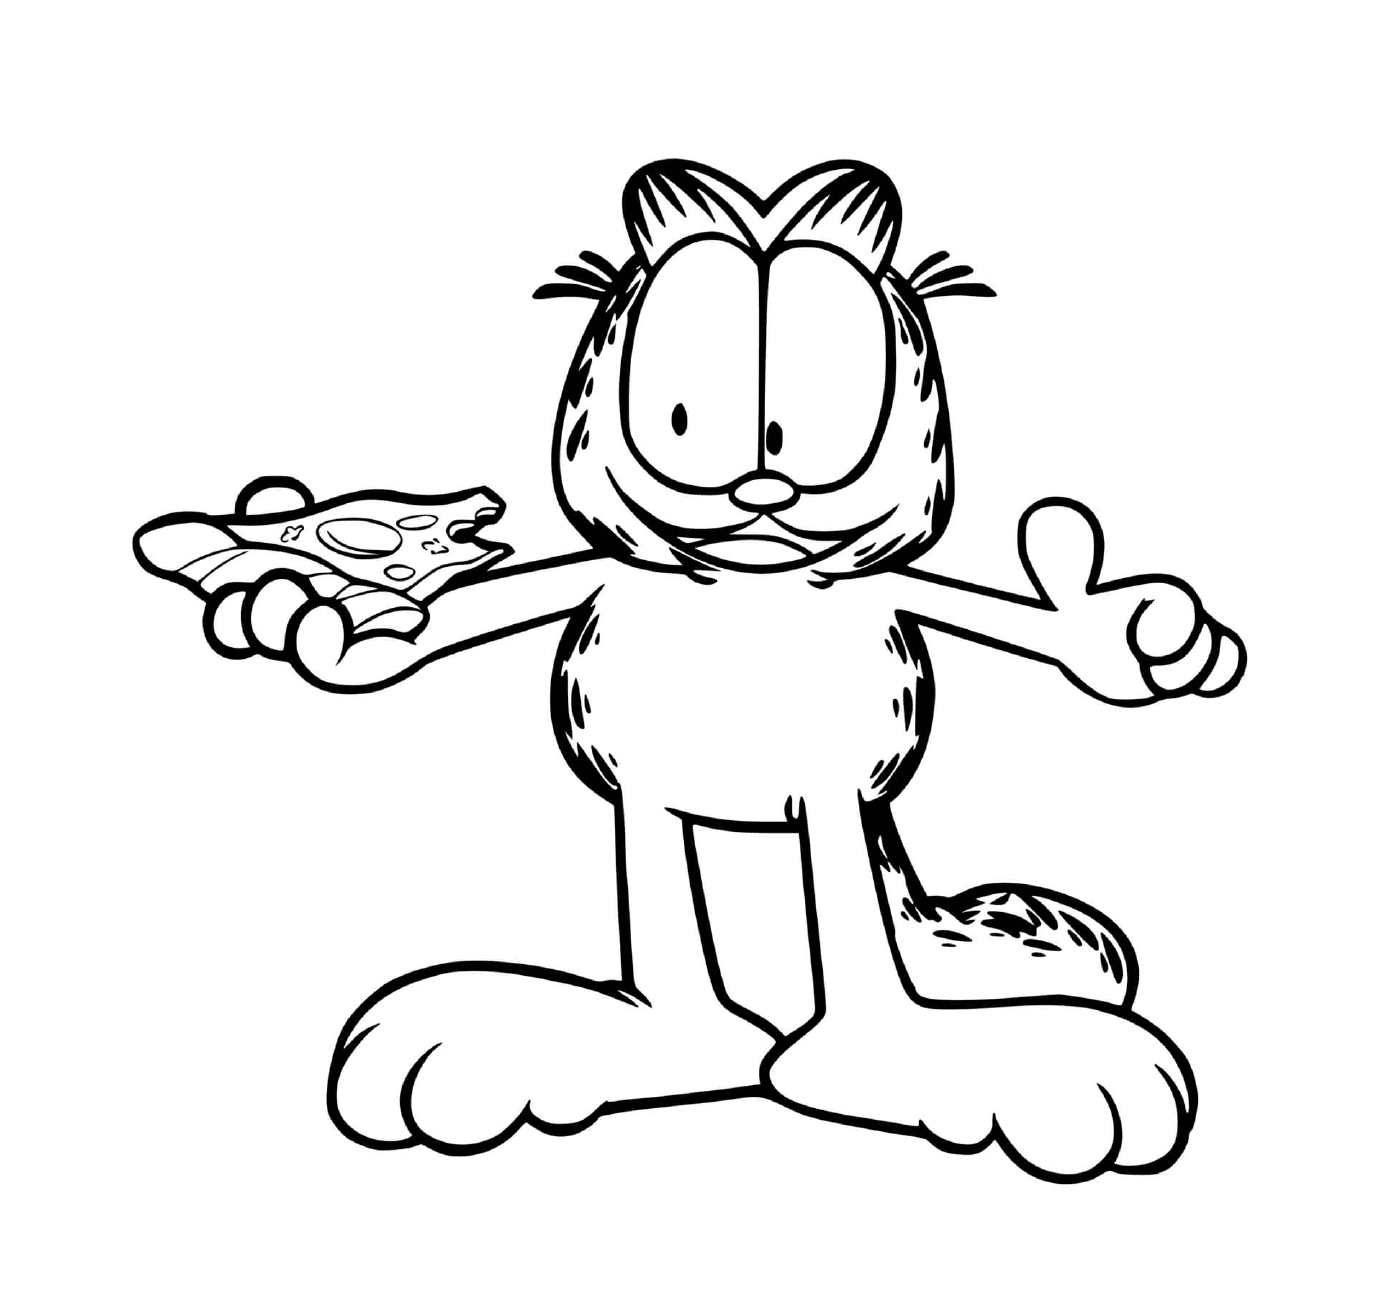  Garfield eats pizza 